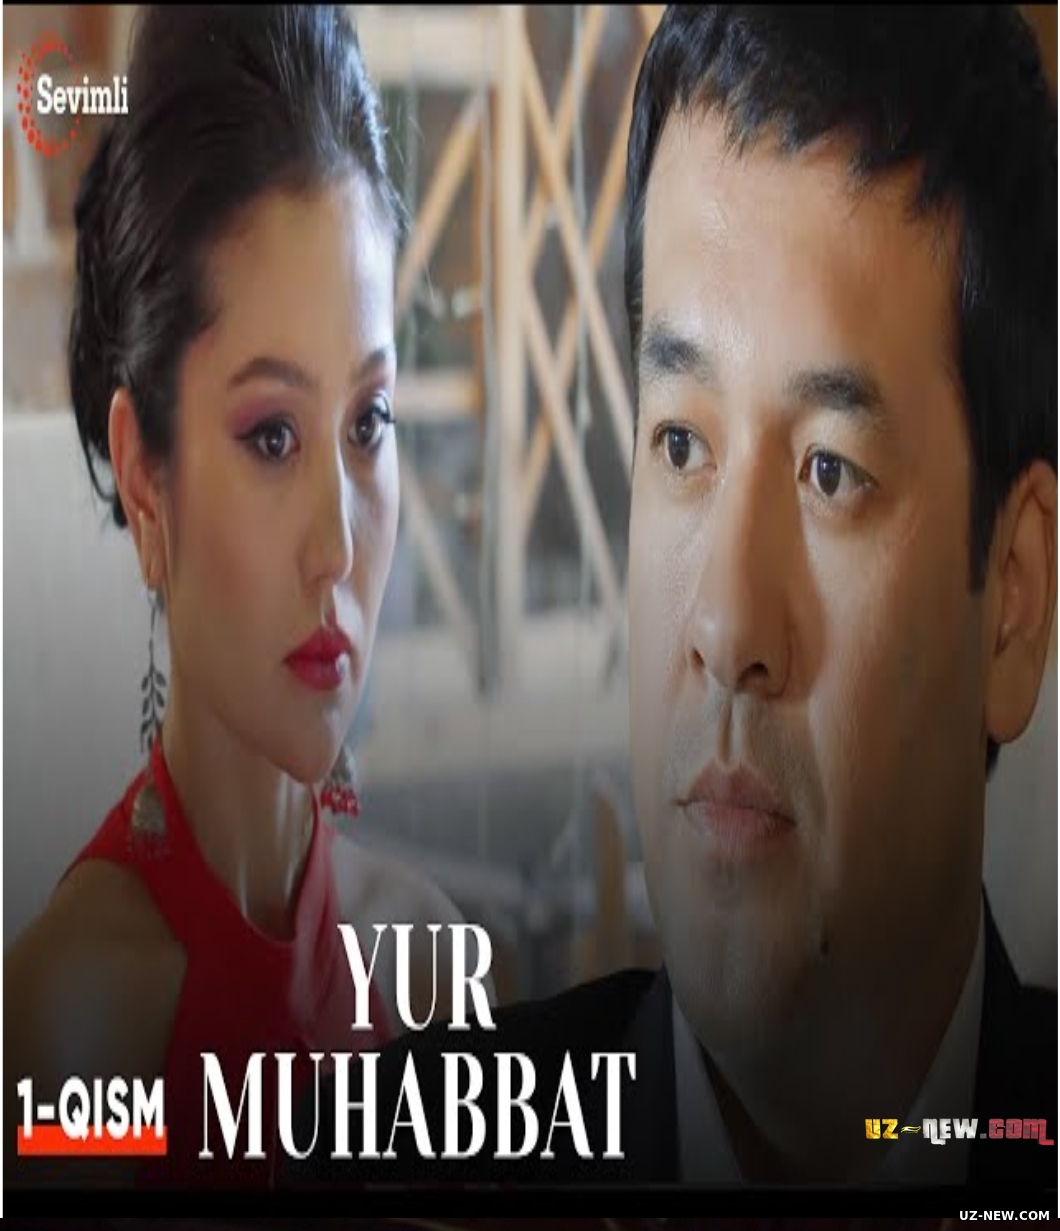 Yur muhabbat 1-10 Qism (Uzbek seriali)